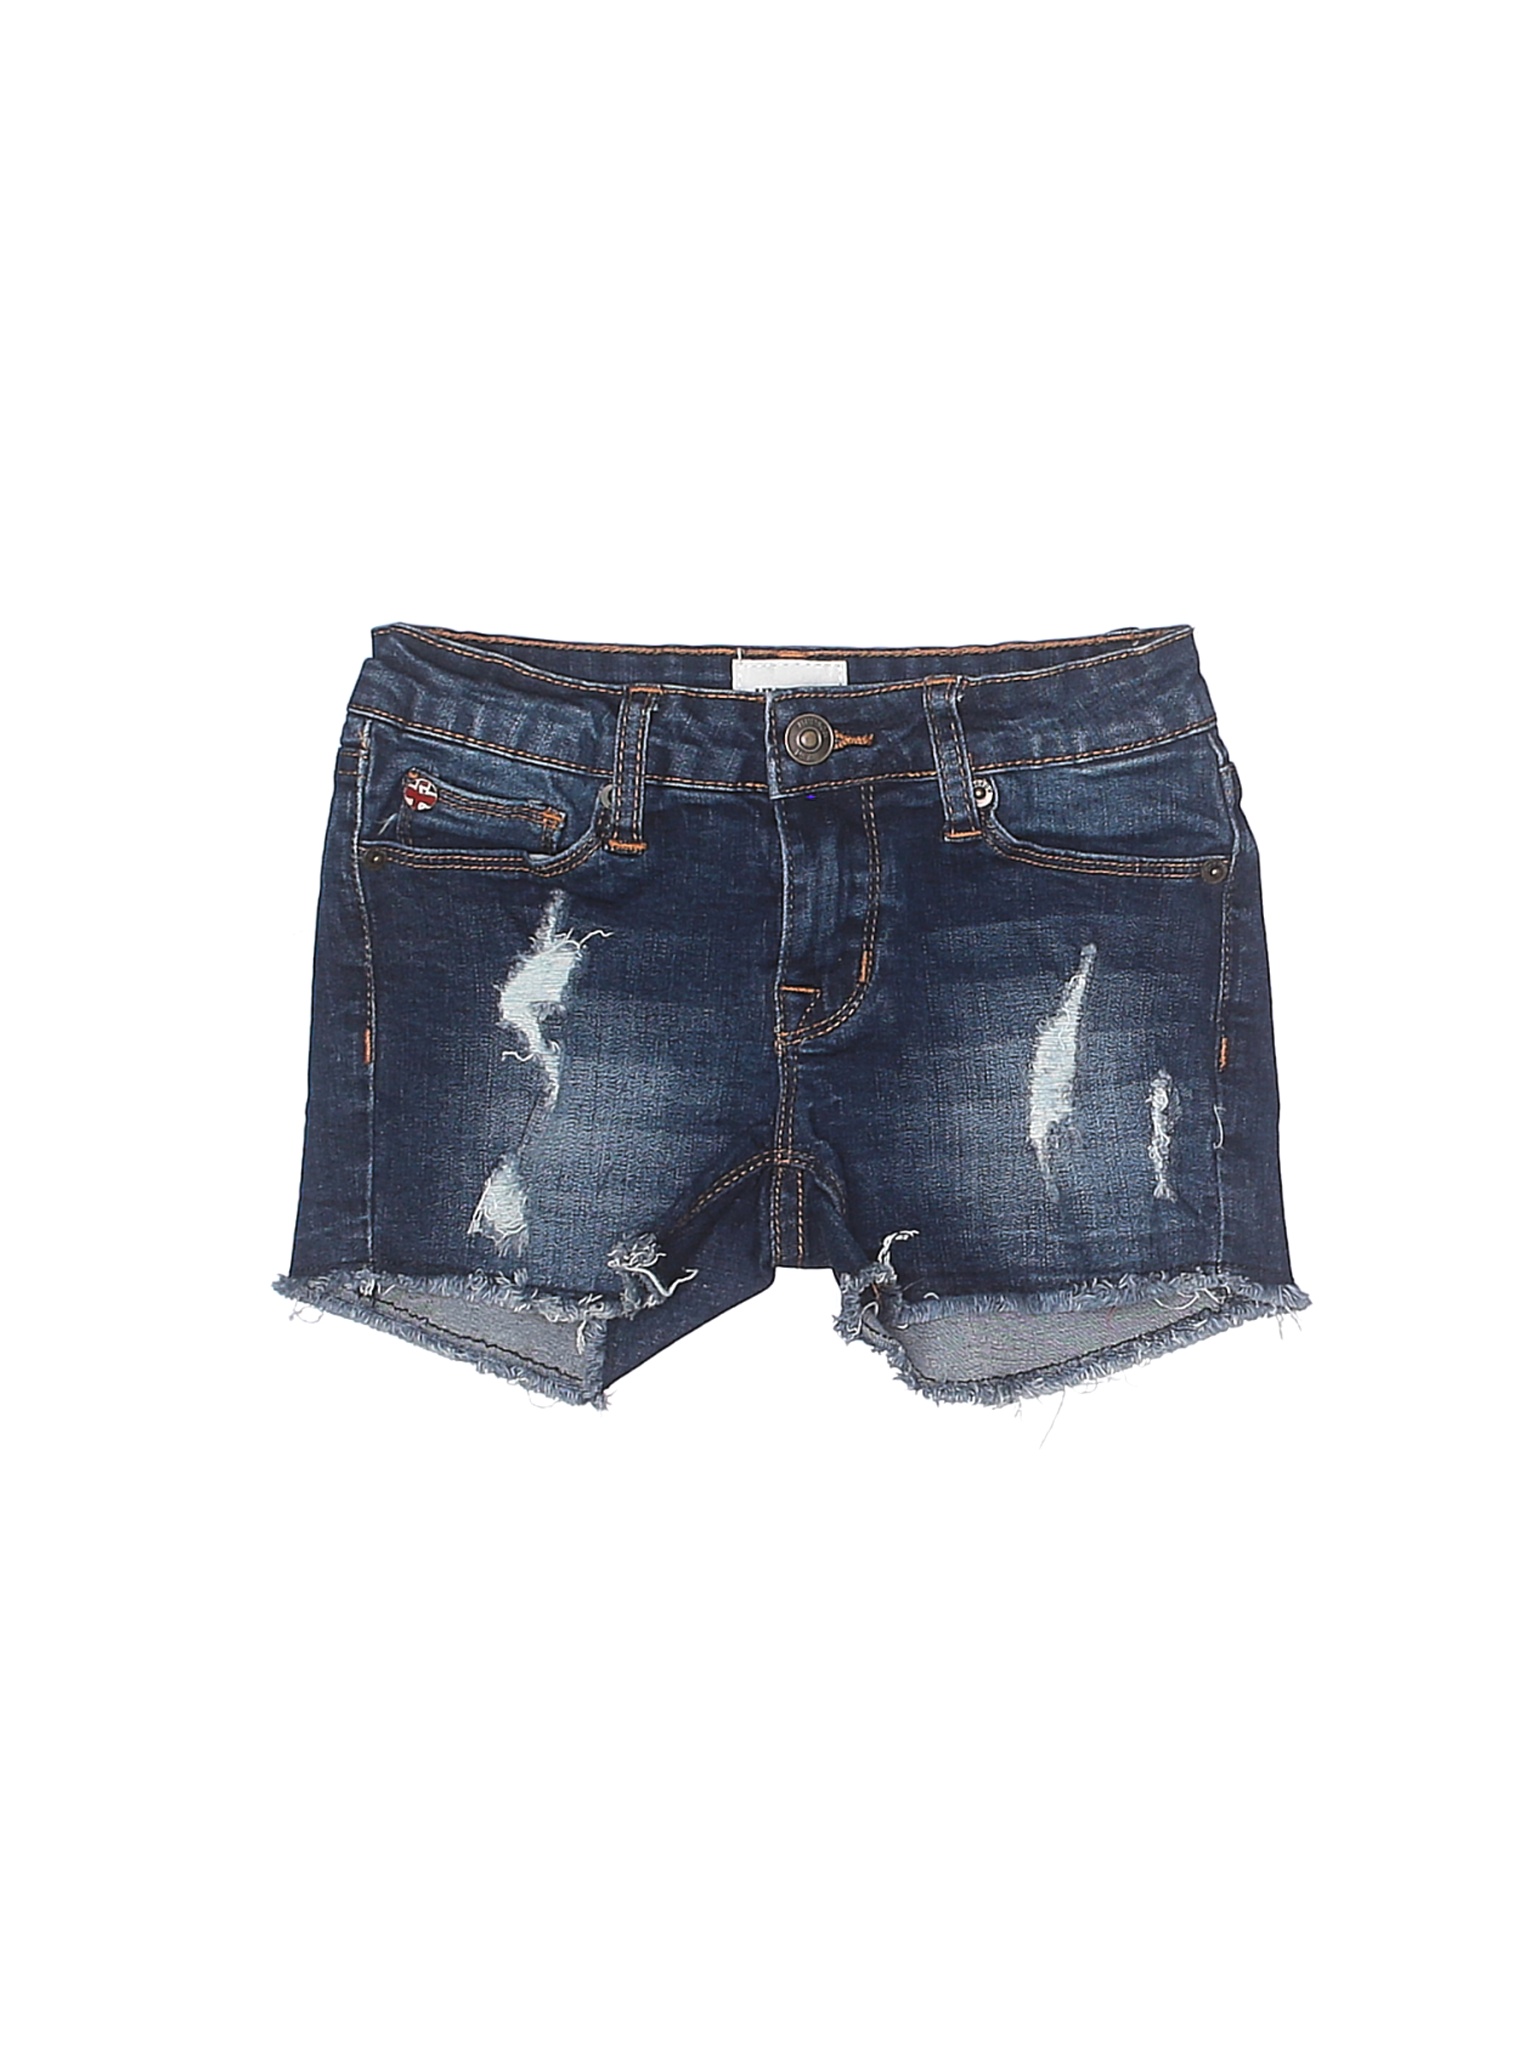 Hudson Jeans Girls Blue Denim Shorts 7 | eBay